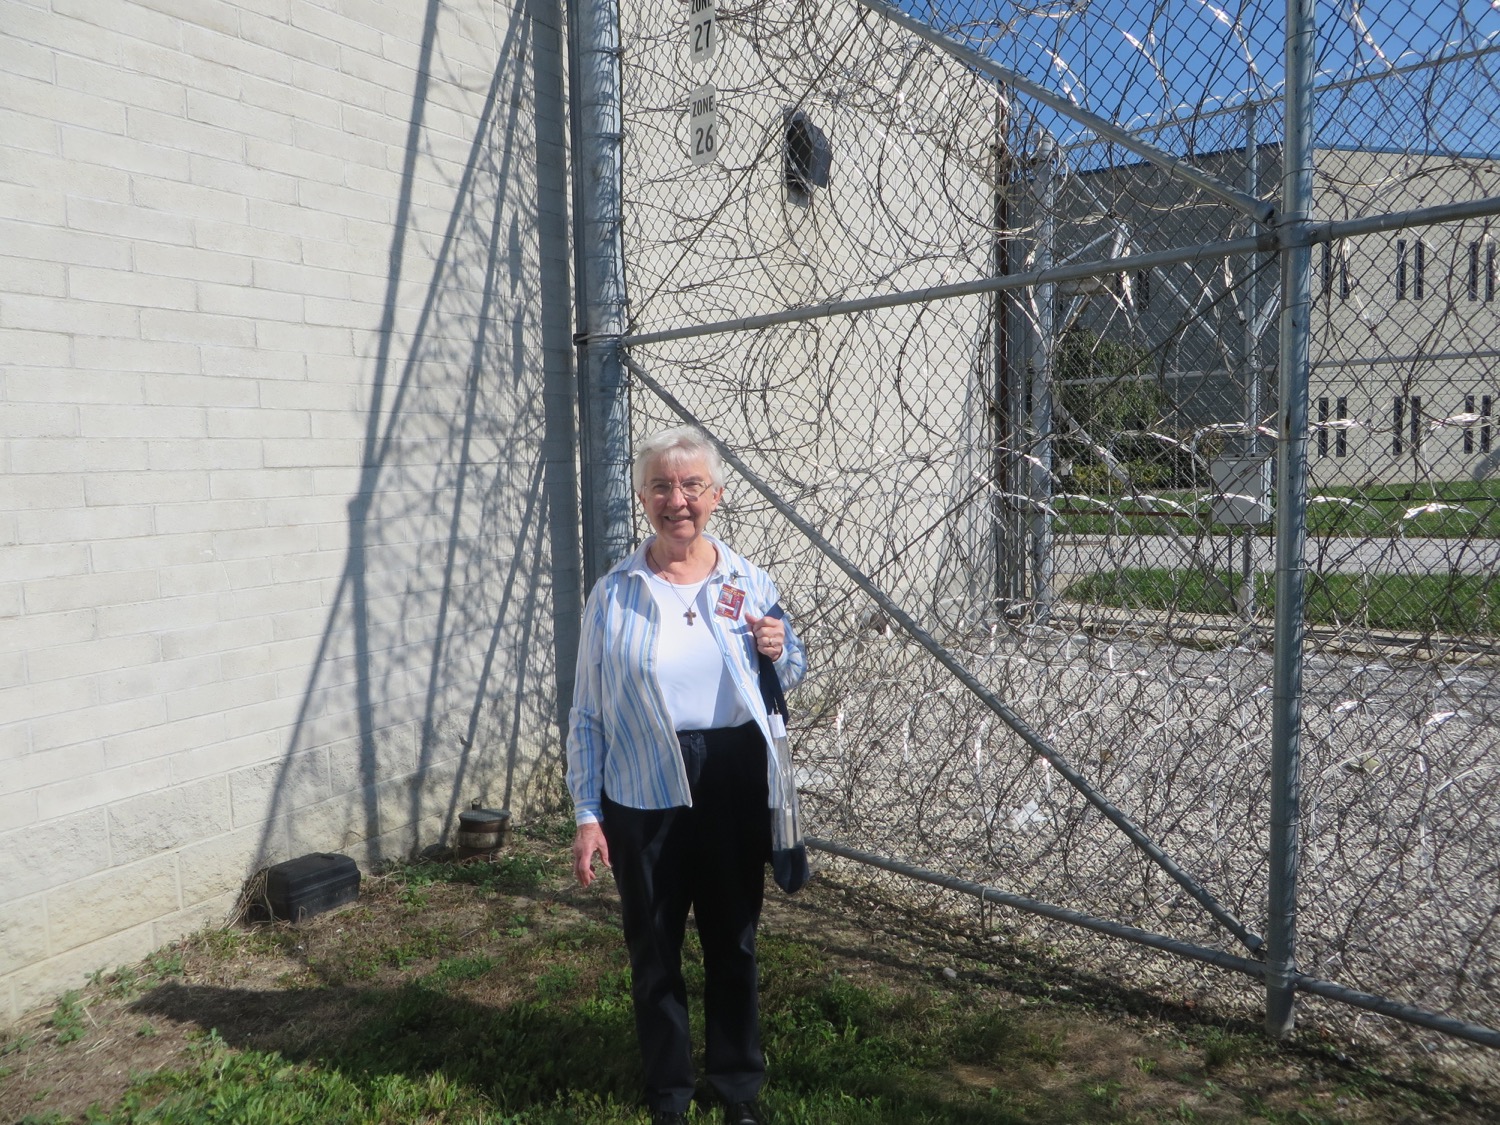 Sister Marguerite Prison III